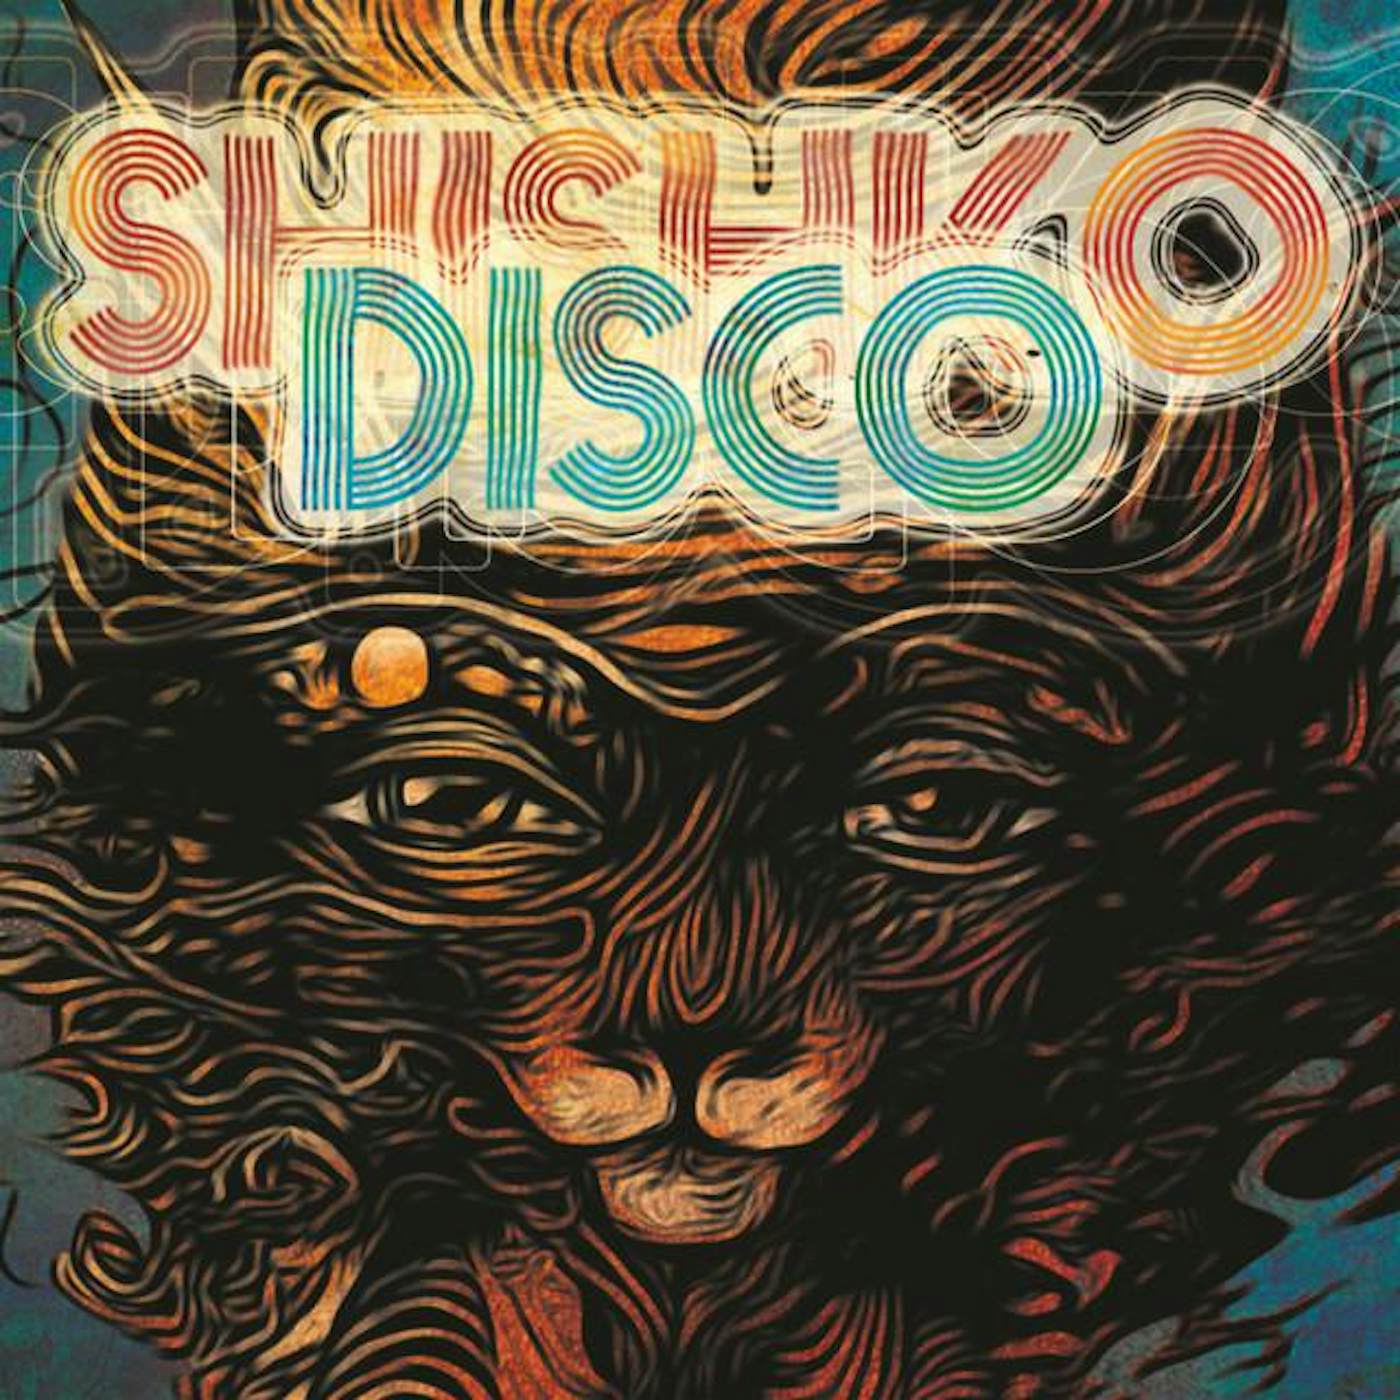 Shishko Disco